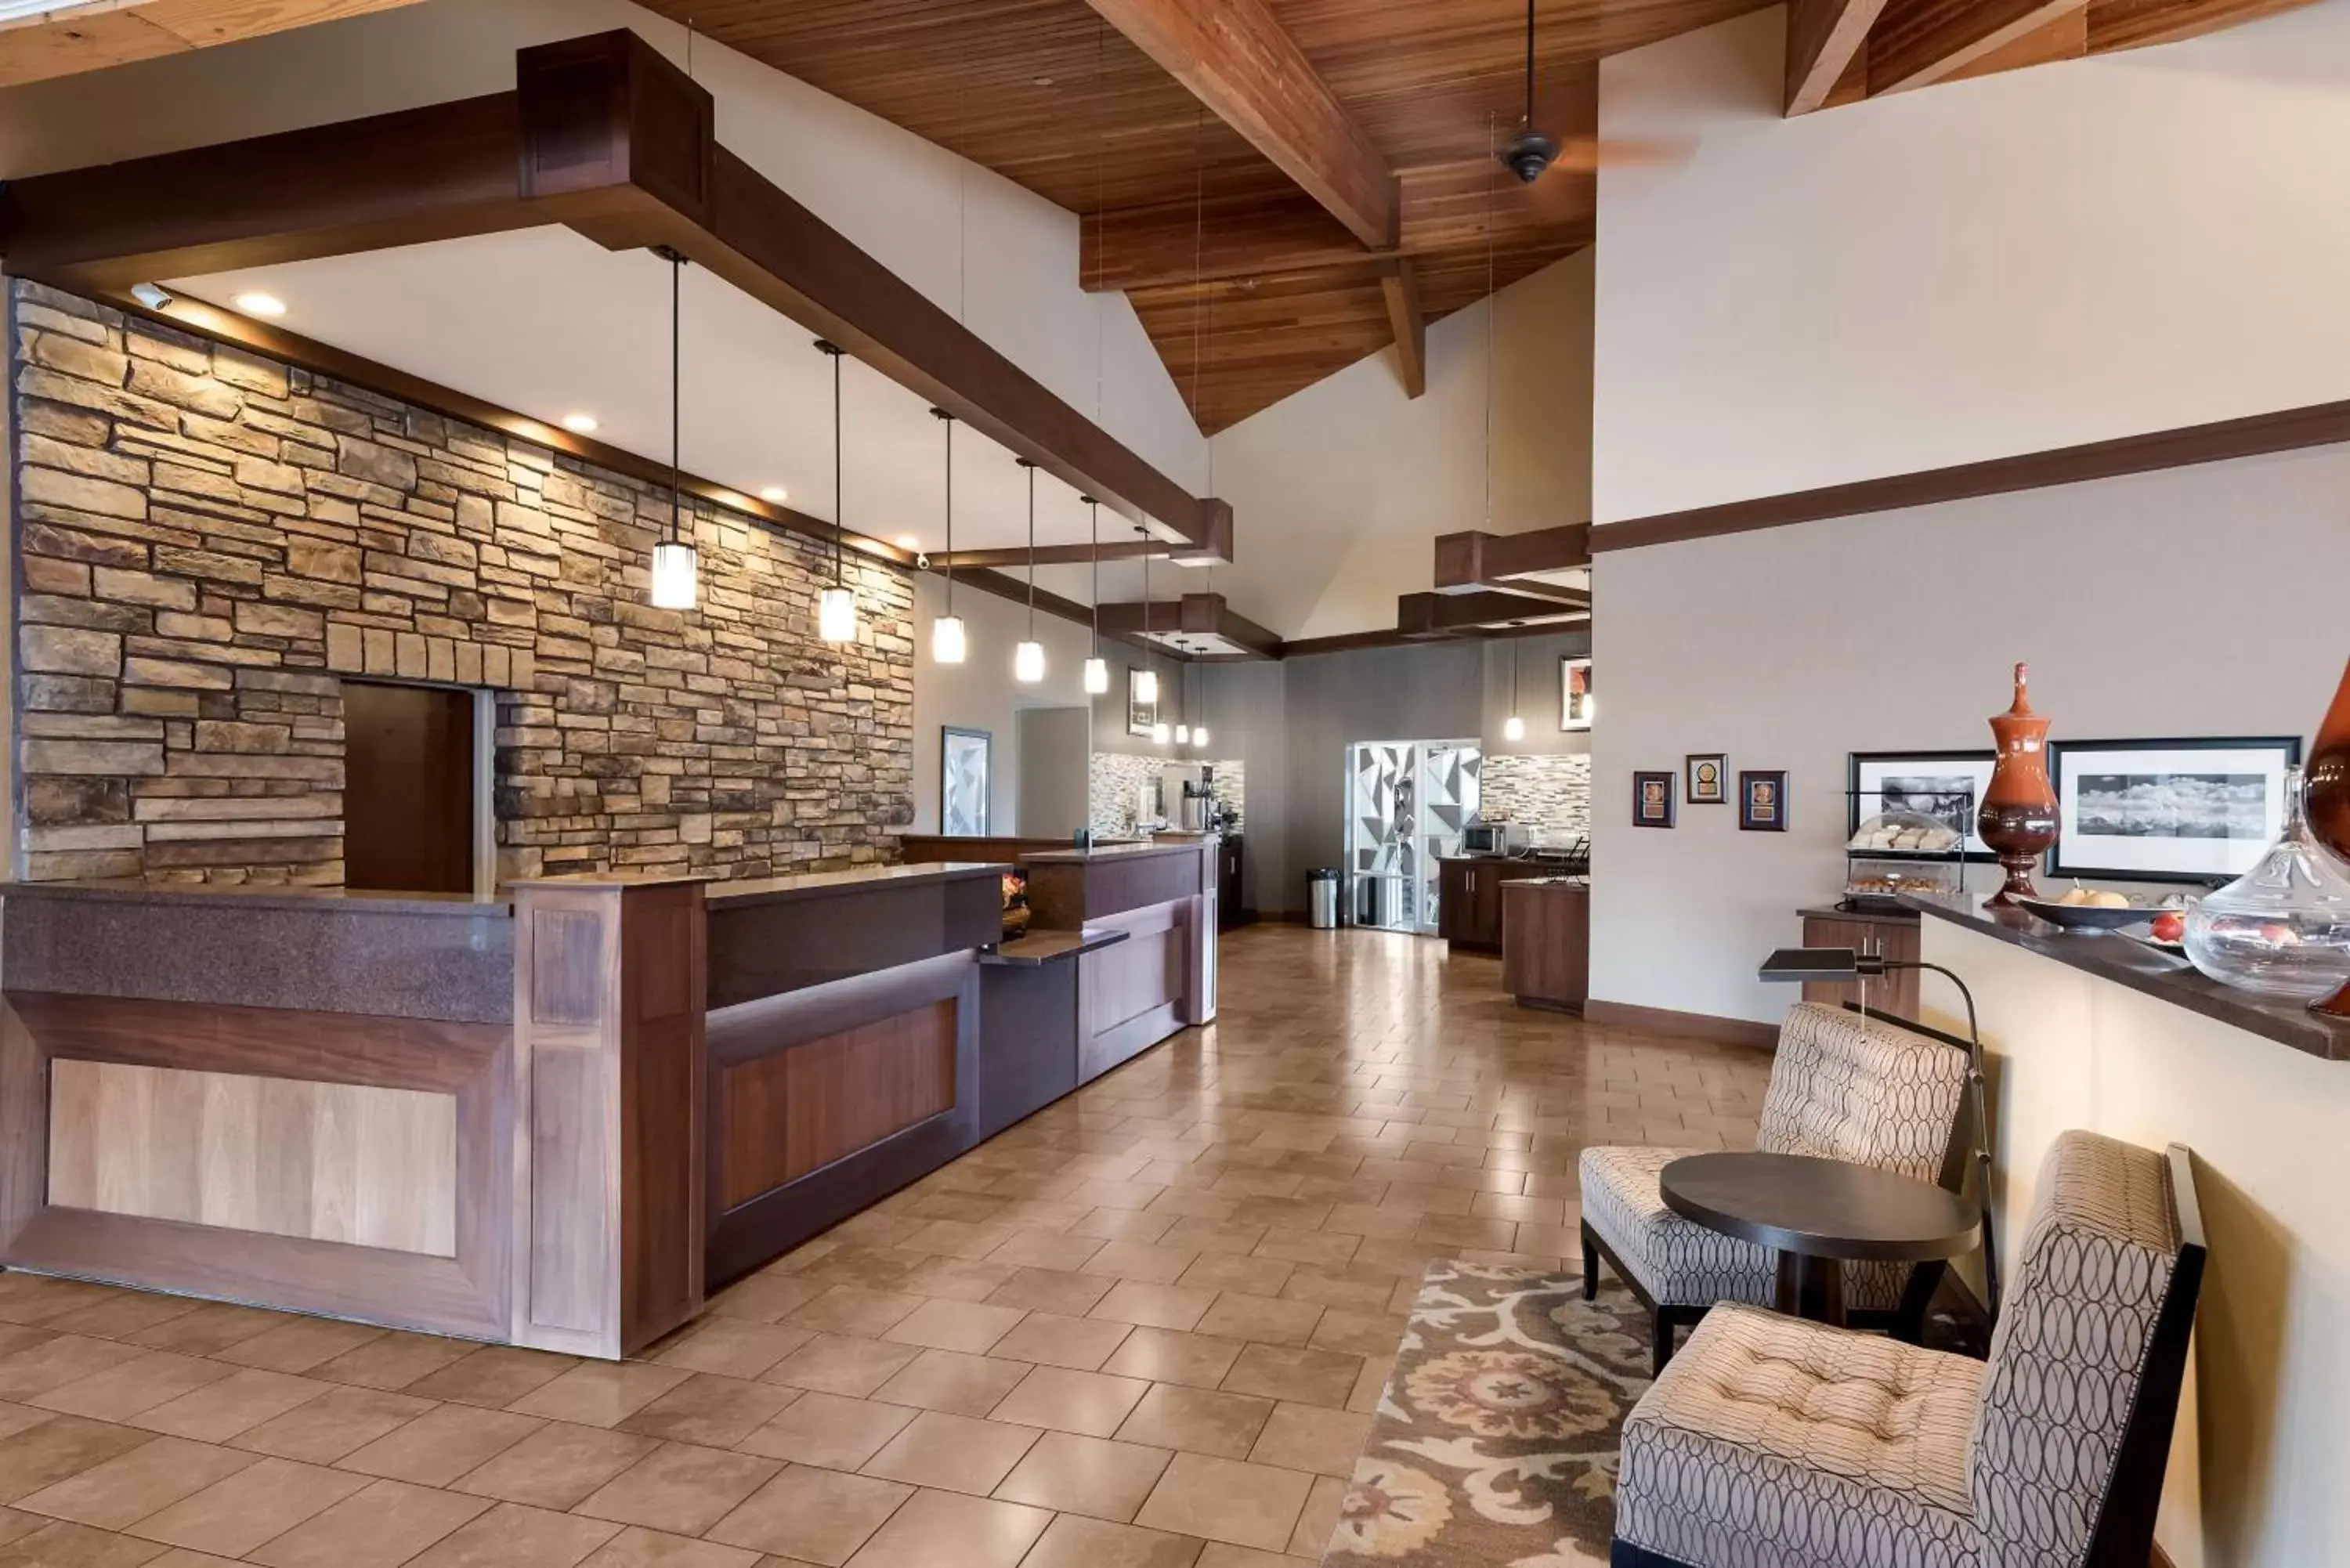 Lobby or reception, Lobby/Reception in Best Western Plus Cedar City